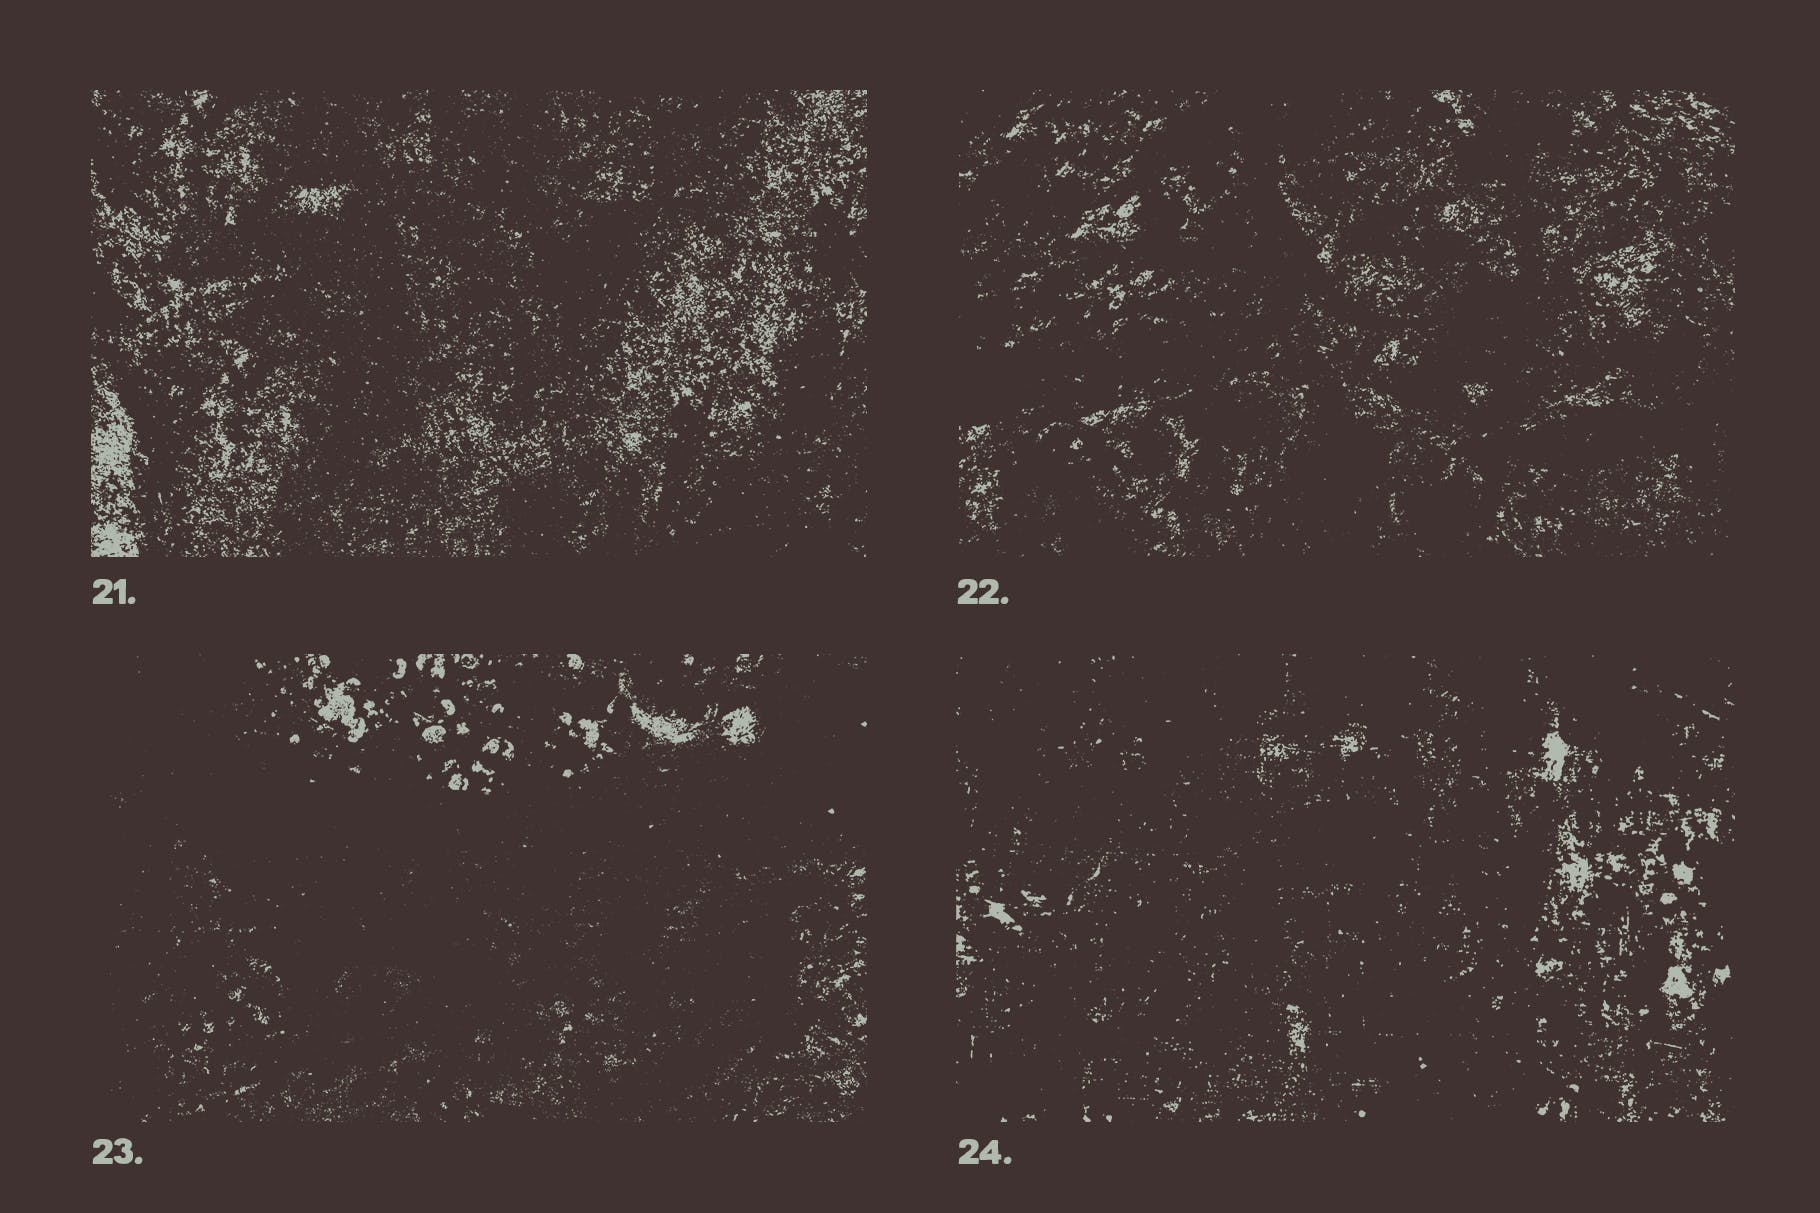 12个污迹斑迹做旧处理矢量纹理背景素材 Vector Grunge Textures x12 Vol2插图1